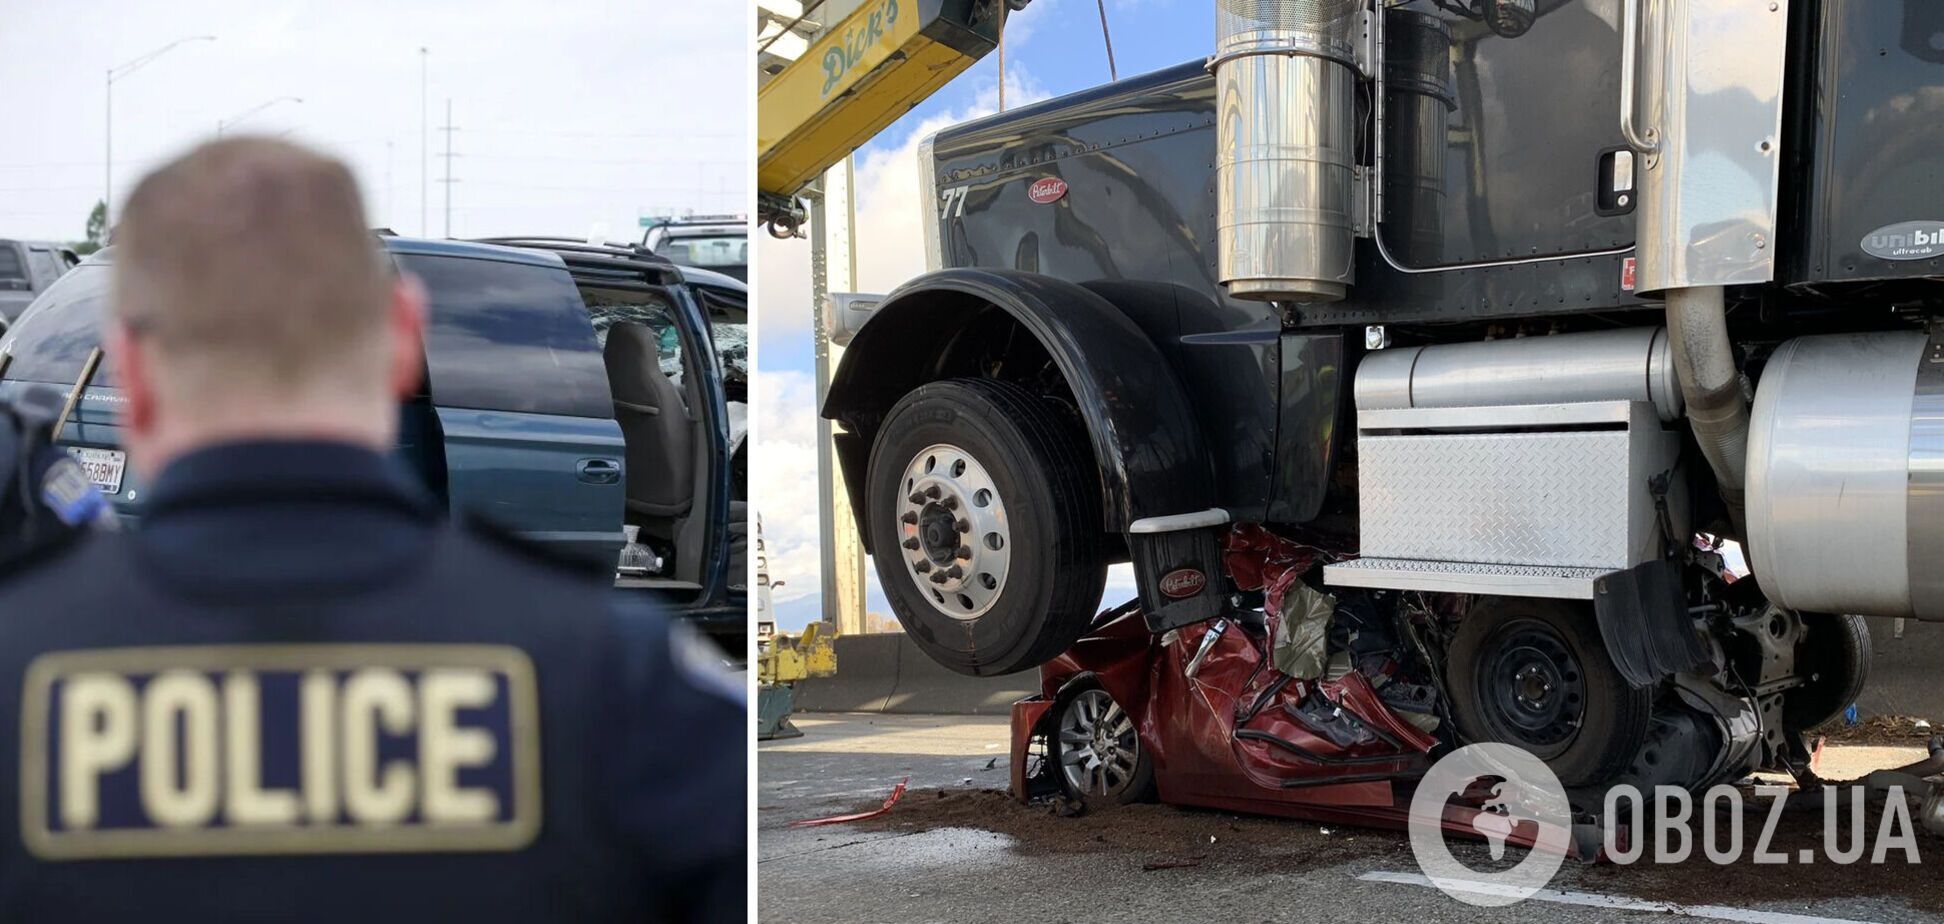 Коп сказав, що такого ще не бачив: у США жінка вижила в ДТП, коли вантажівка повністю зім'яла її авто. Фото